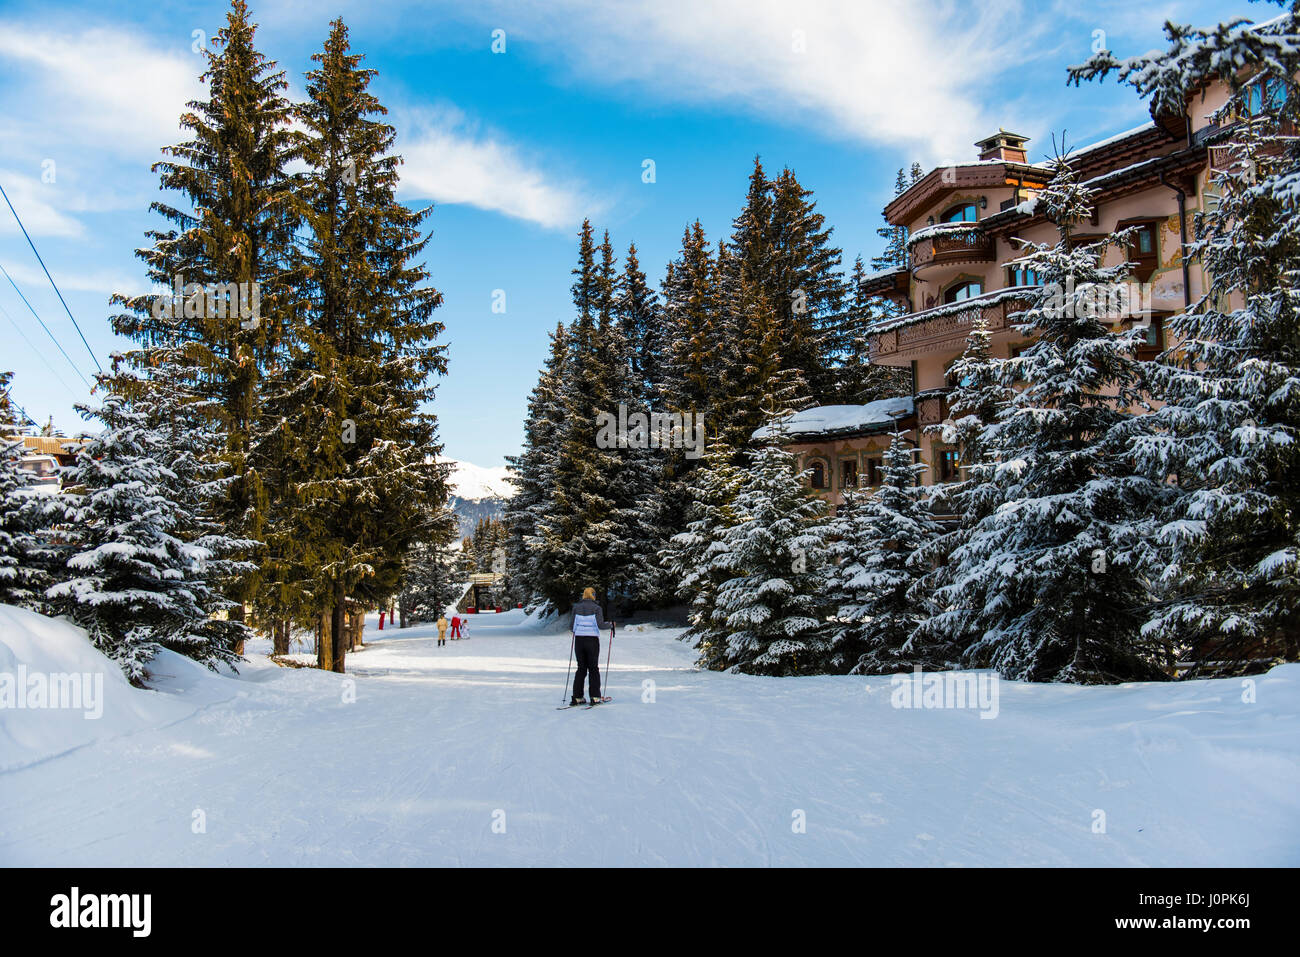 Sciatore su una neve piste da sci piste da sci in inverno alpine resort di montagna con boschi di conifere di alberi di pino e hotel Foto Stock